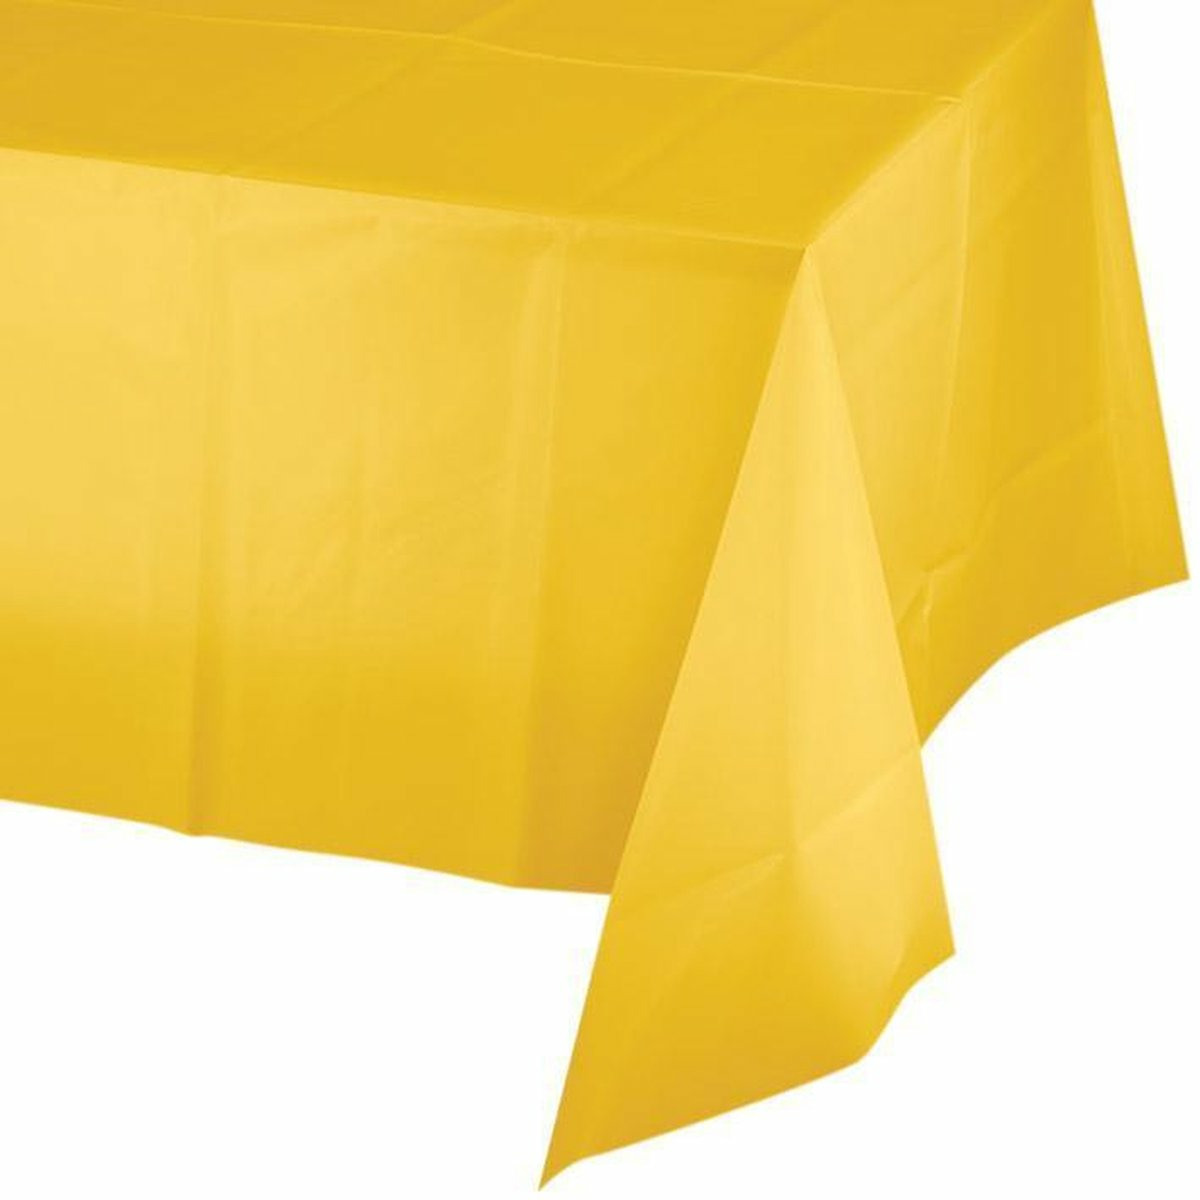 Feest tafelkleed van papier geel 274 x 137 cm Pasen thema tafel versiering